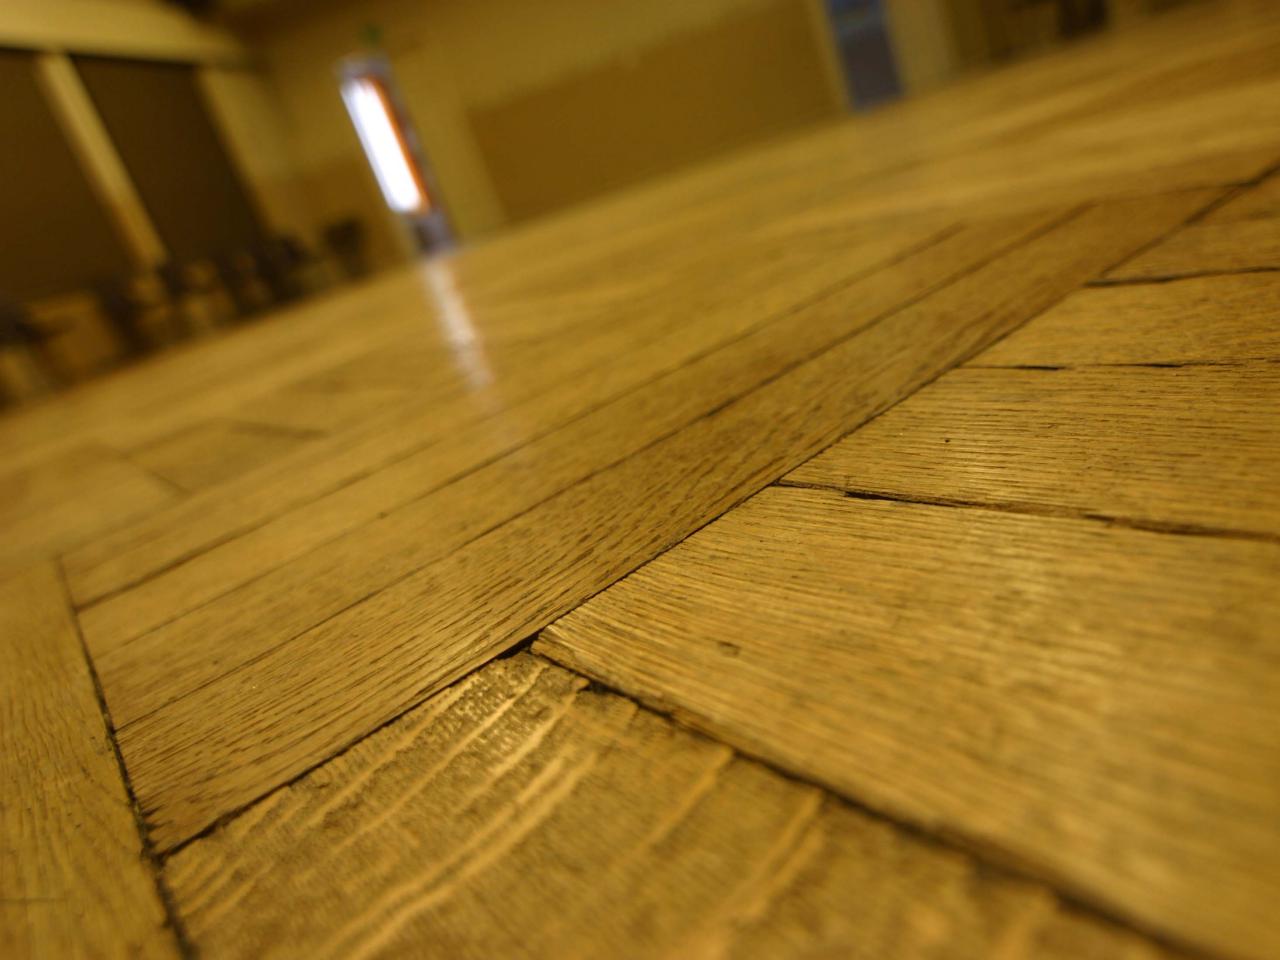 How To Fix A Squeaky Floor, Squeaky Hardwood Floor Cleaner